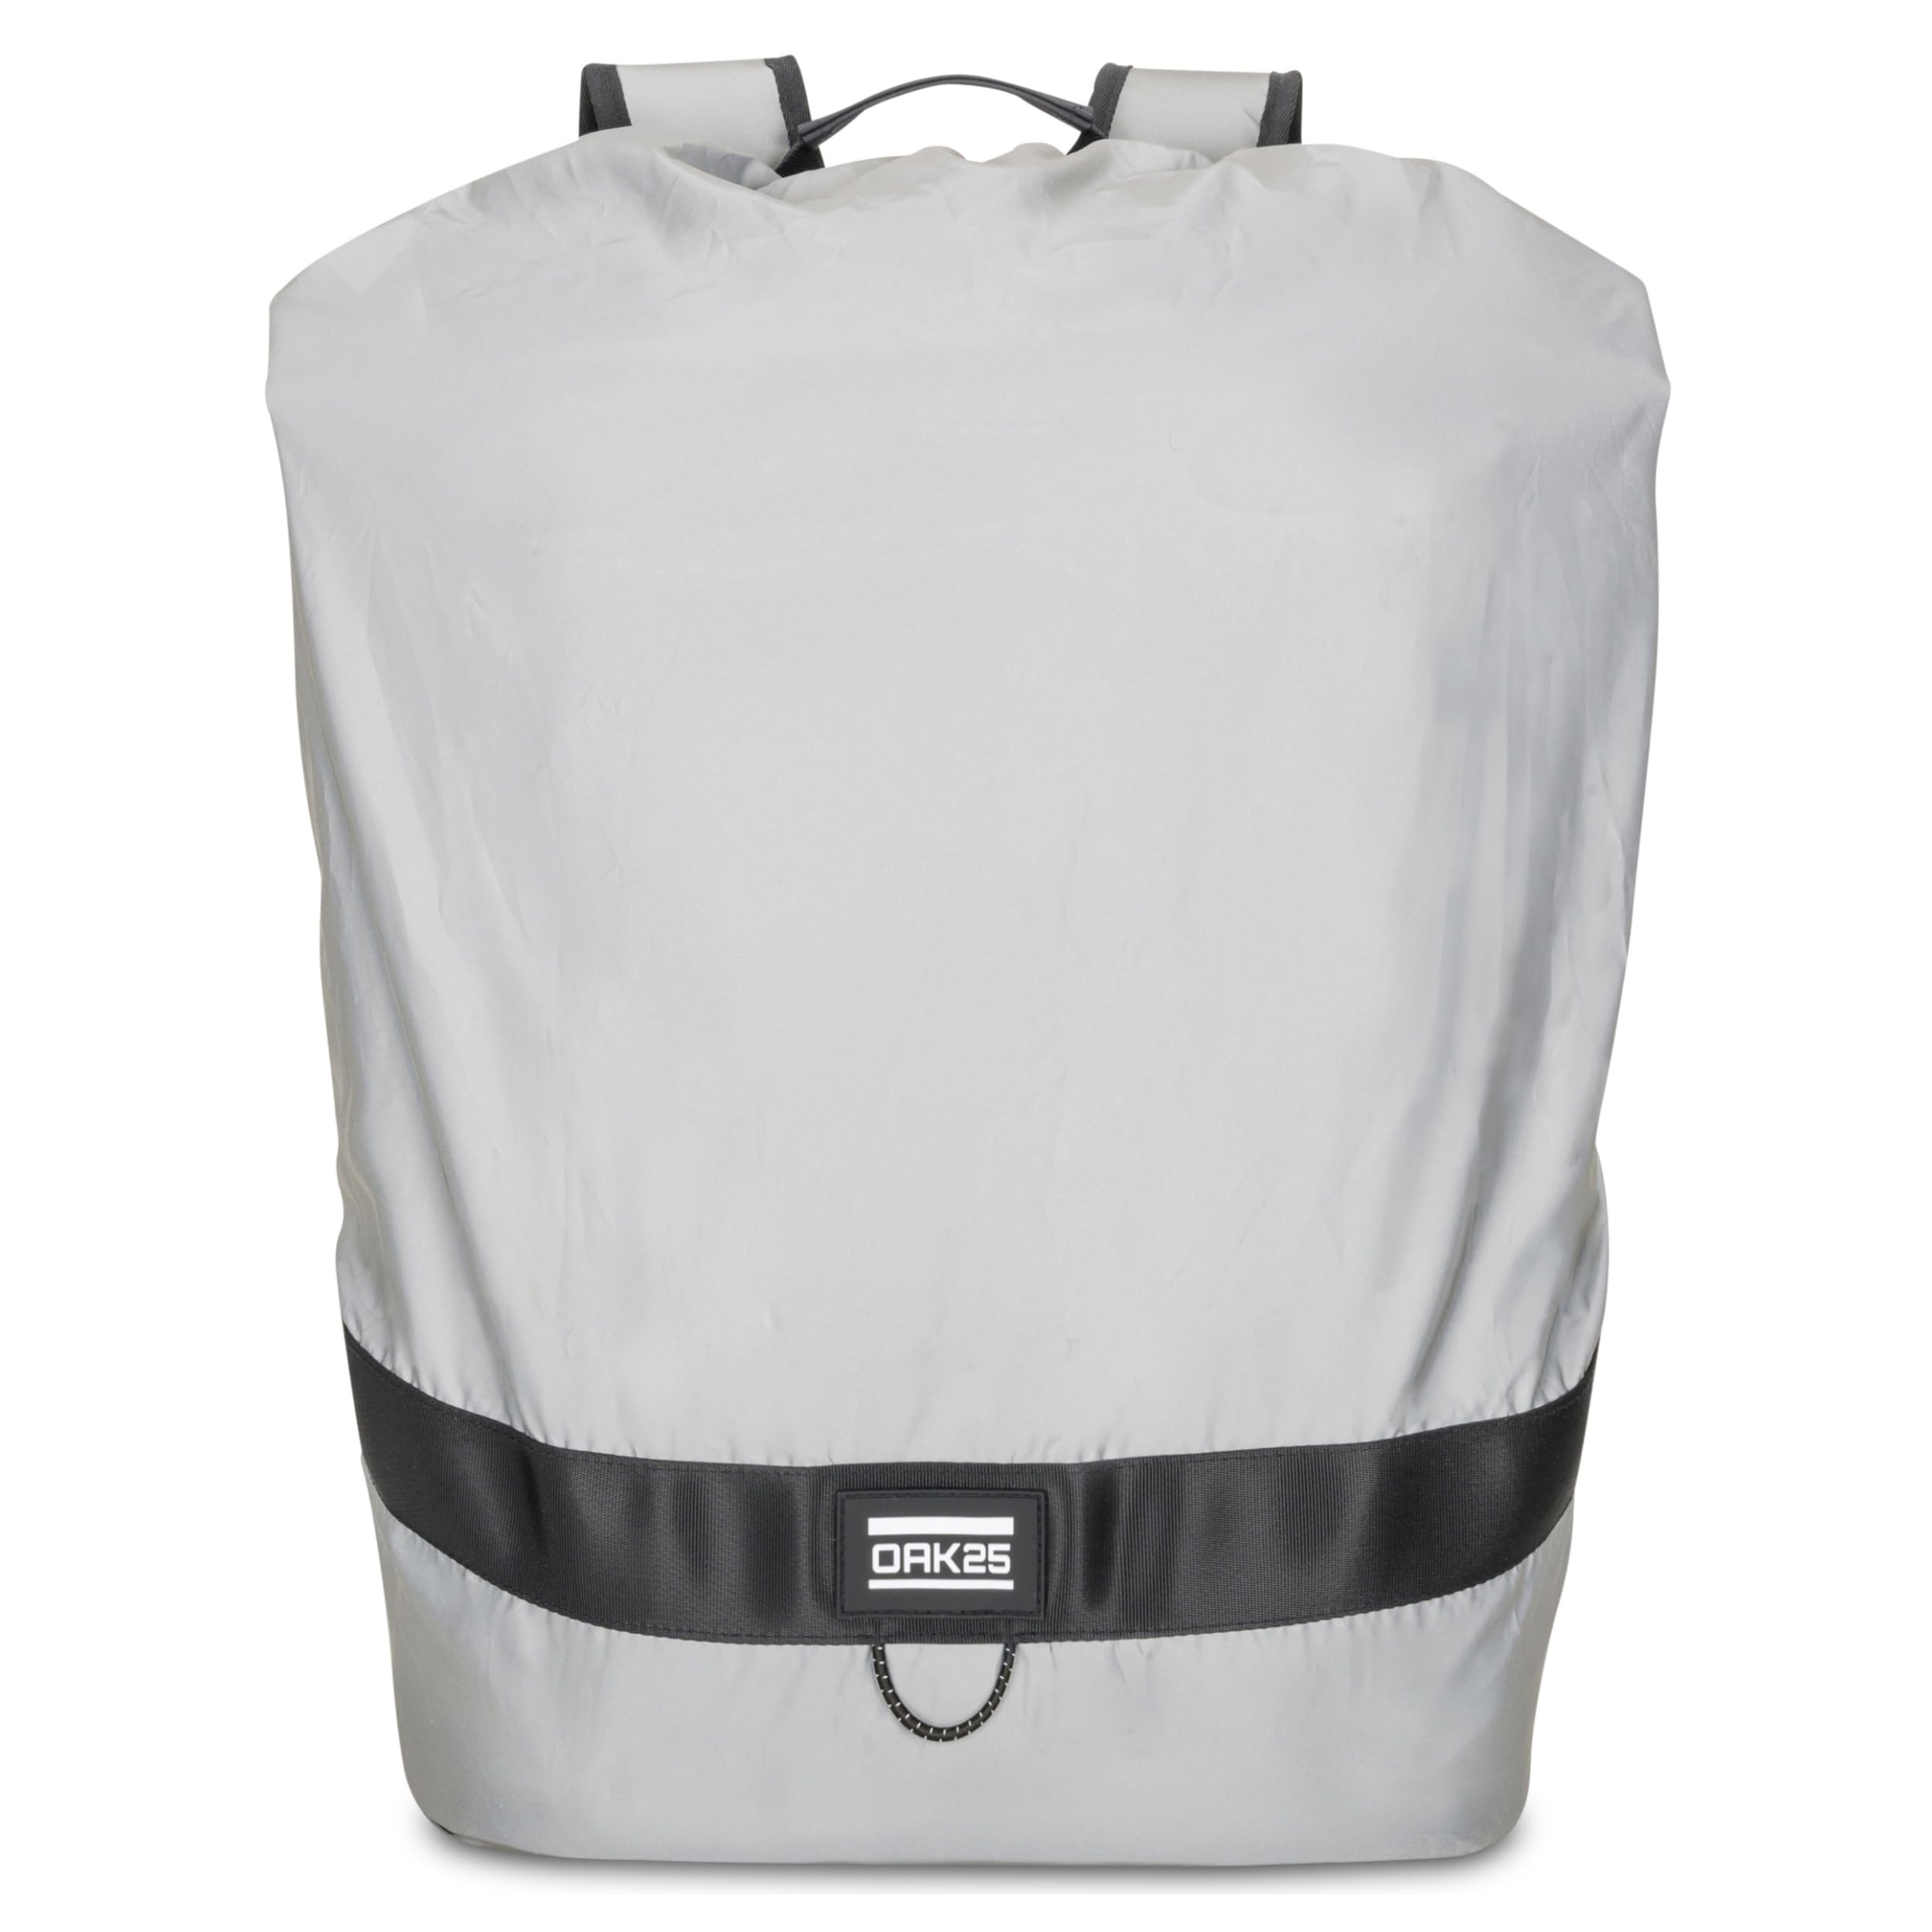 OAK25 Regenschutz für Rucksack Reflektierend - RAIN Cover M - Regenhülle für Backpack, Schulranzen oder Schulrucksack, Faltbarer Regenüberzug 15l-30l - Wasserdicht